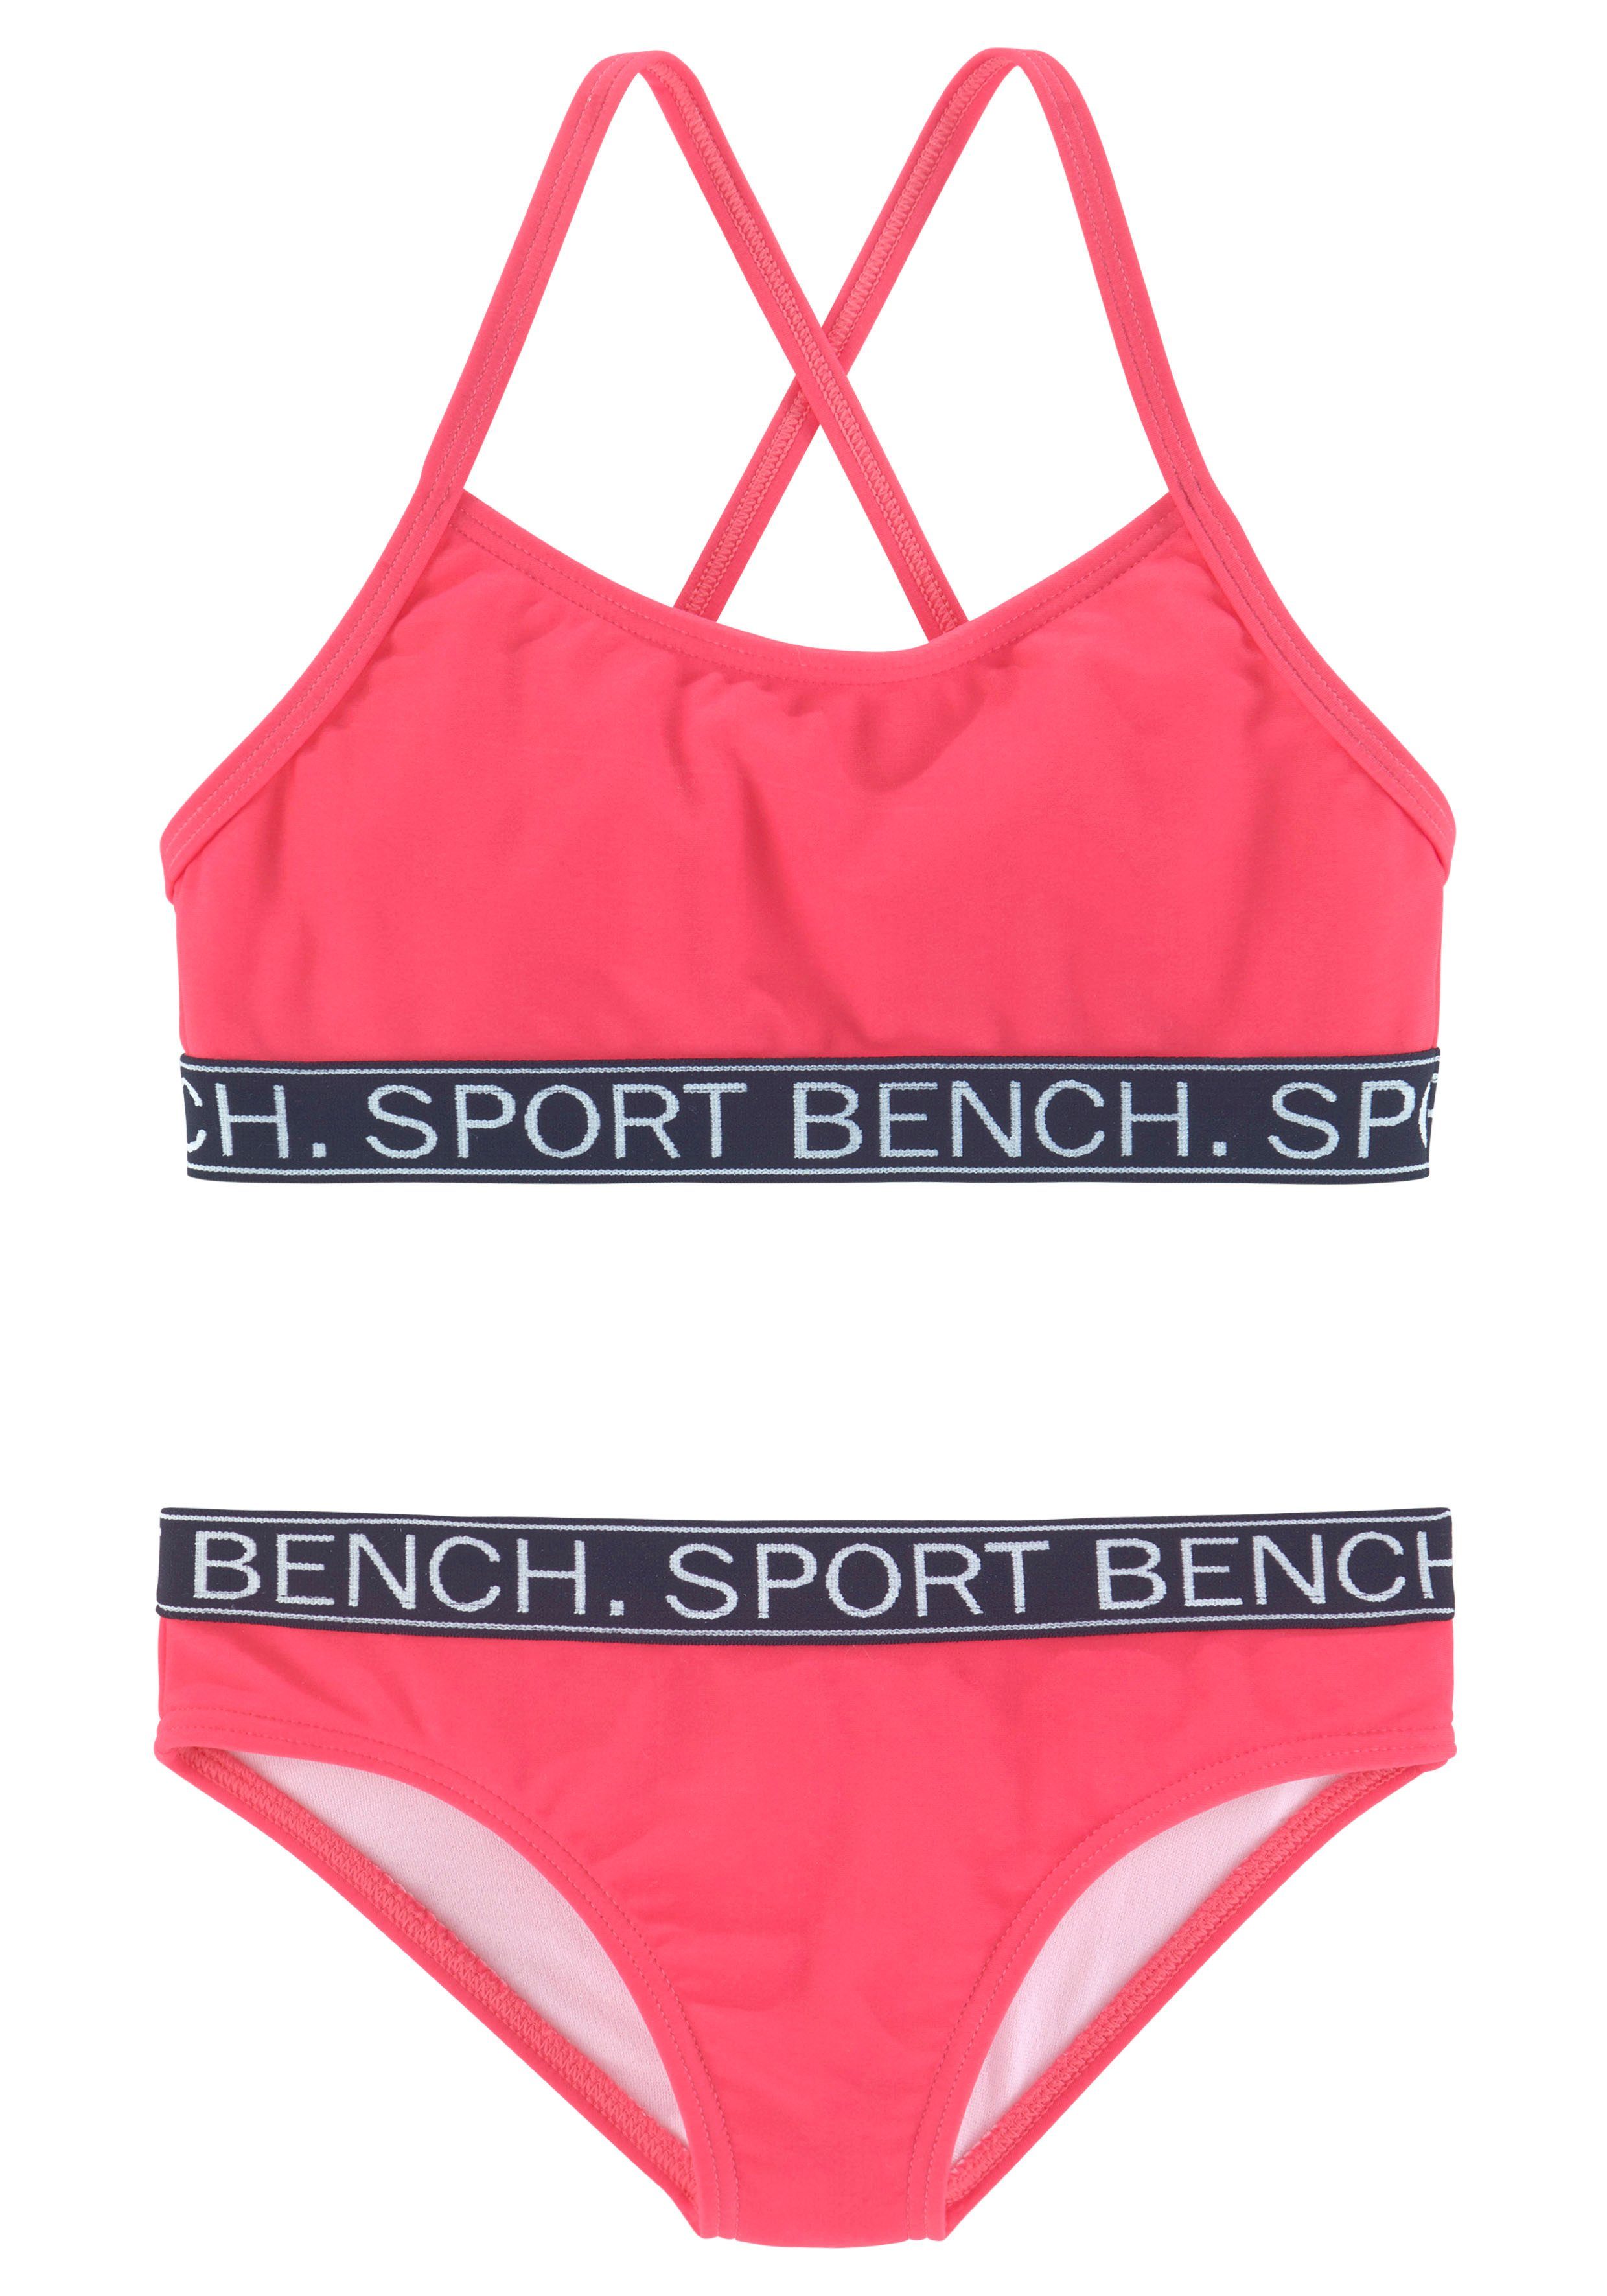 Bench. Bustier-Bikini Yva Design in pink Kids sportlichem Farben und